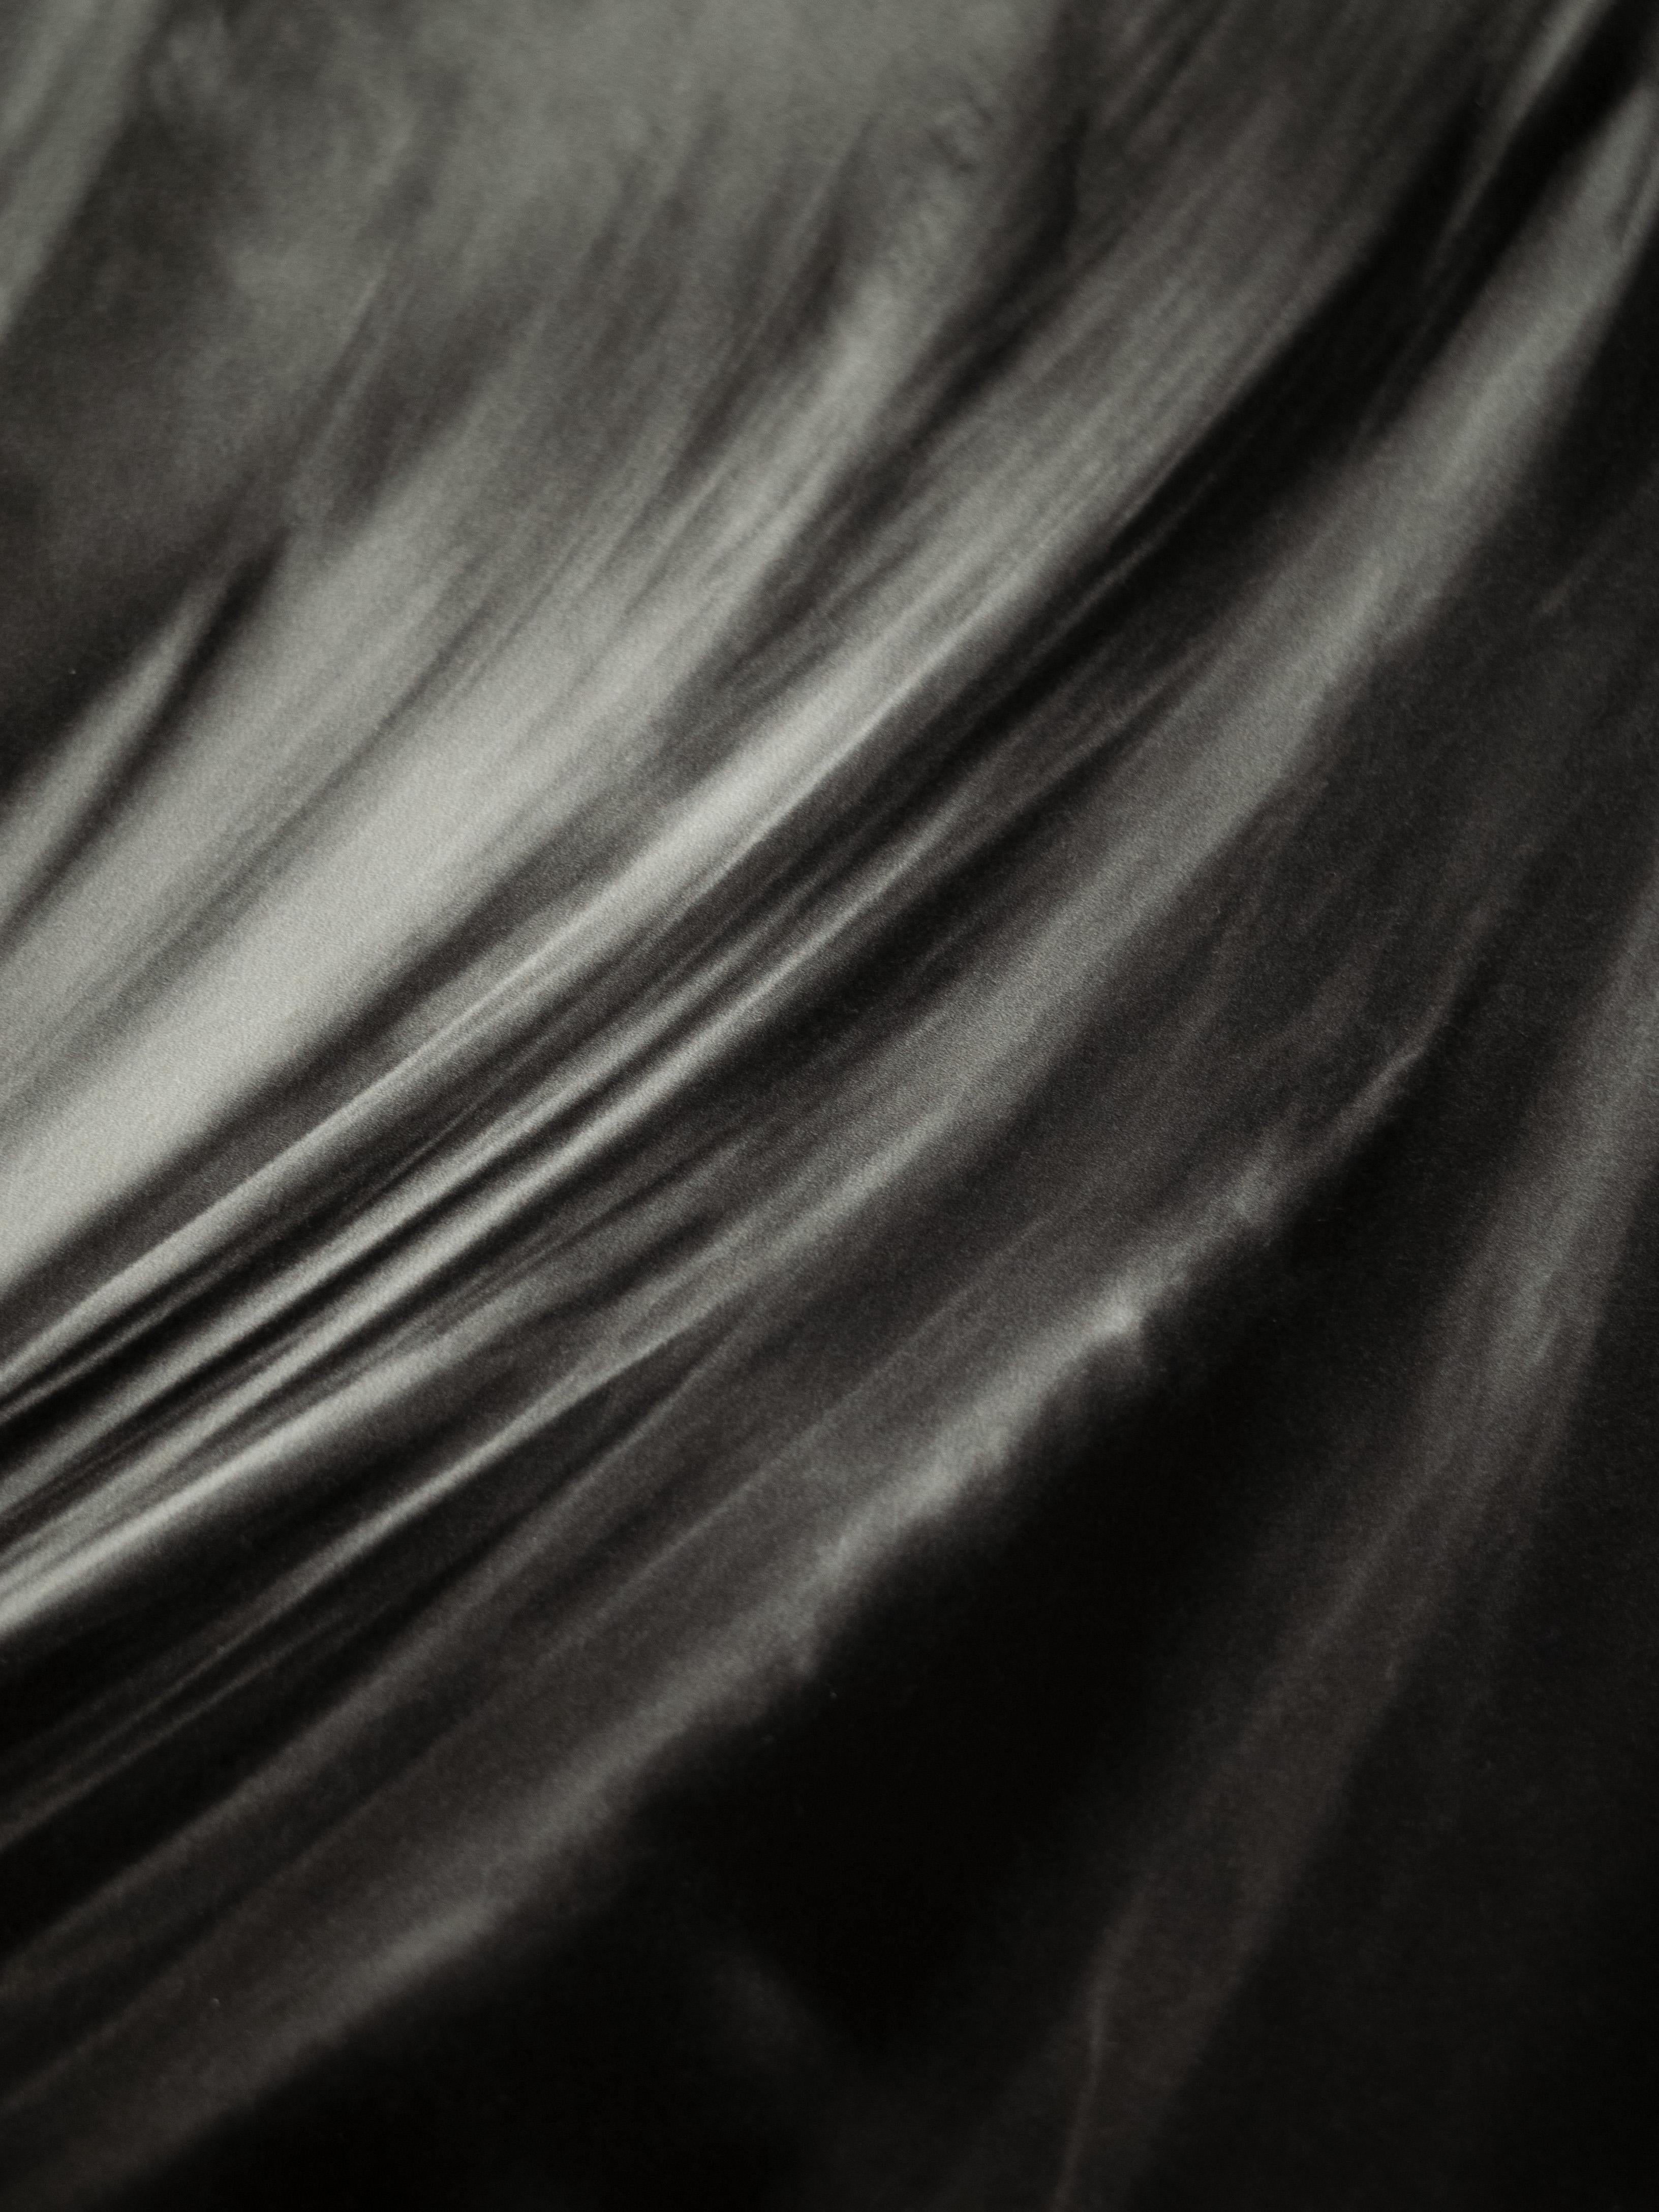 Windgestreckter Tagtraum (Abstrakter Expressionismus), Photograph, von Ugne Pouwell